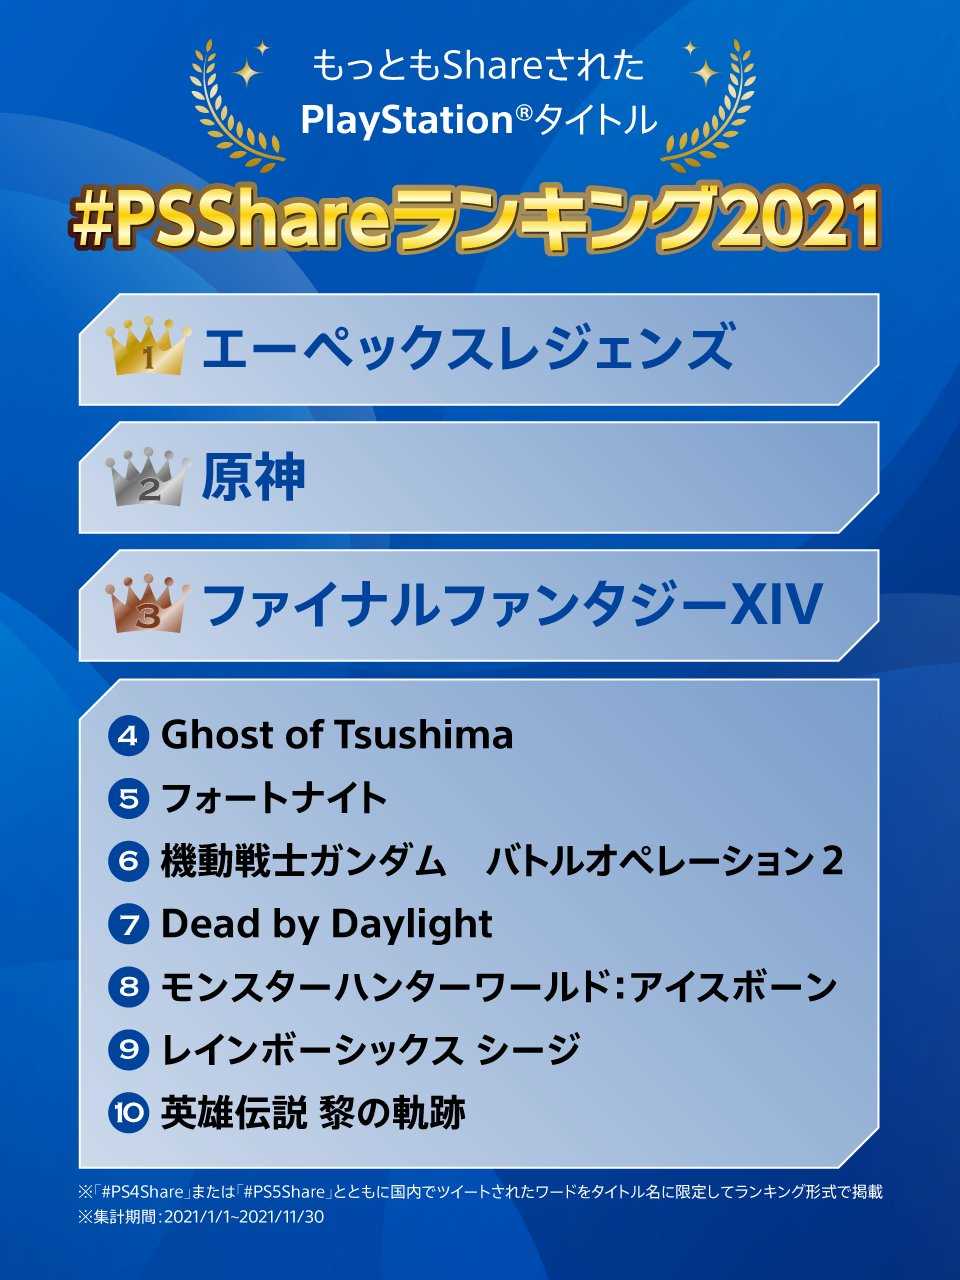 2021 PS Share日本国内十大游戏《Apex英雄》登顶